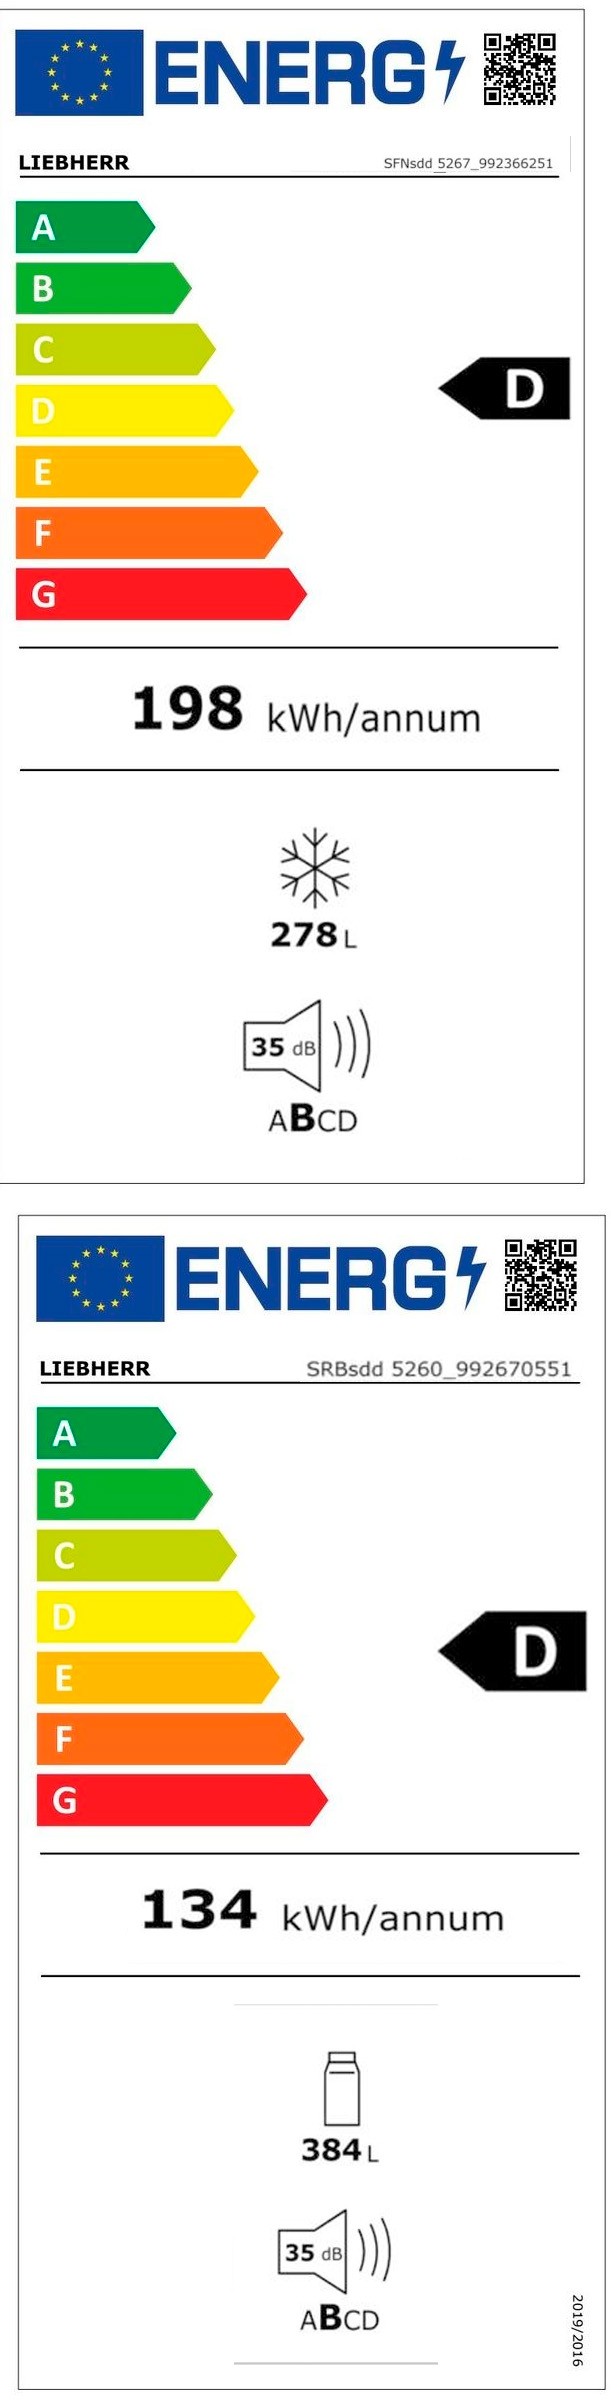 Etiqueta de Eficiencia Energética - XRFsd 5265